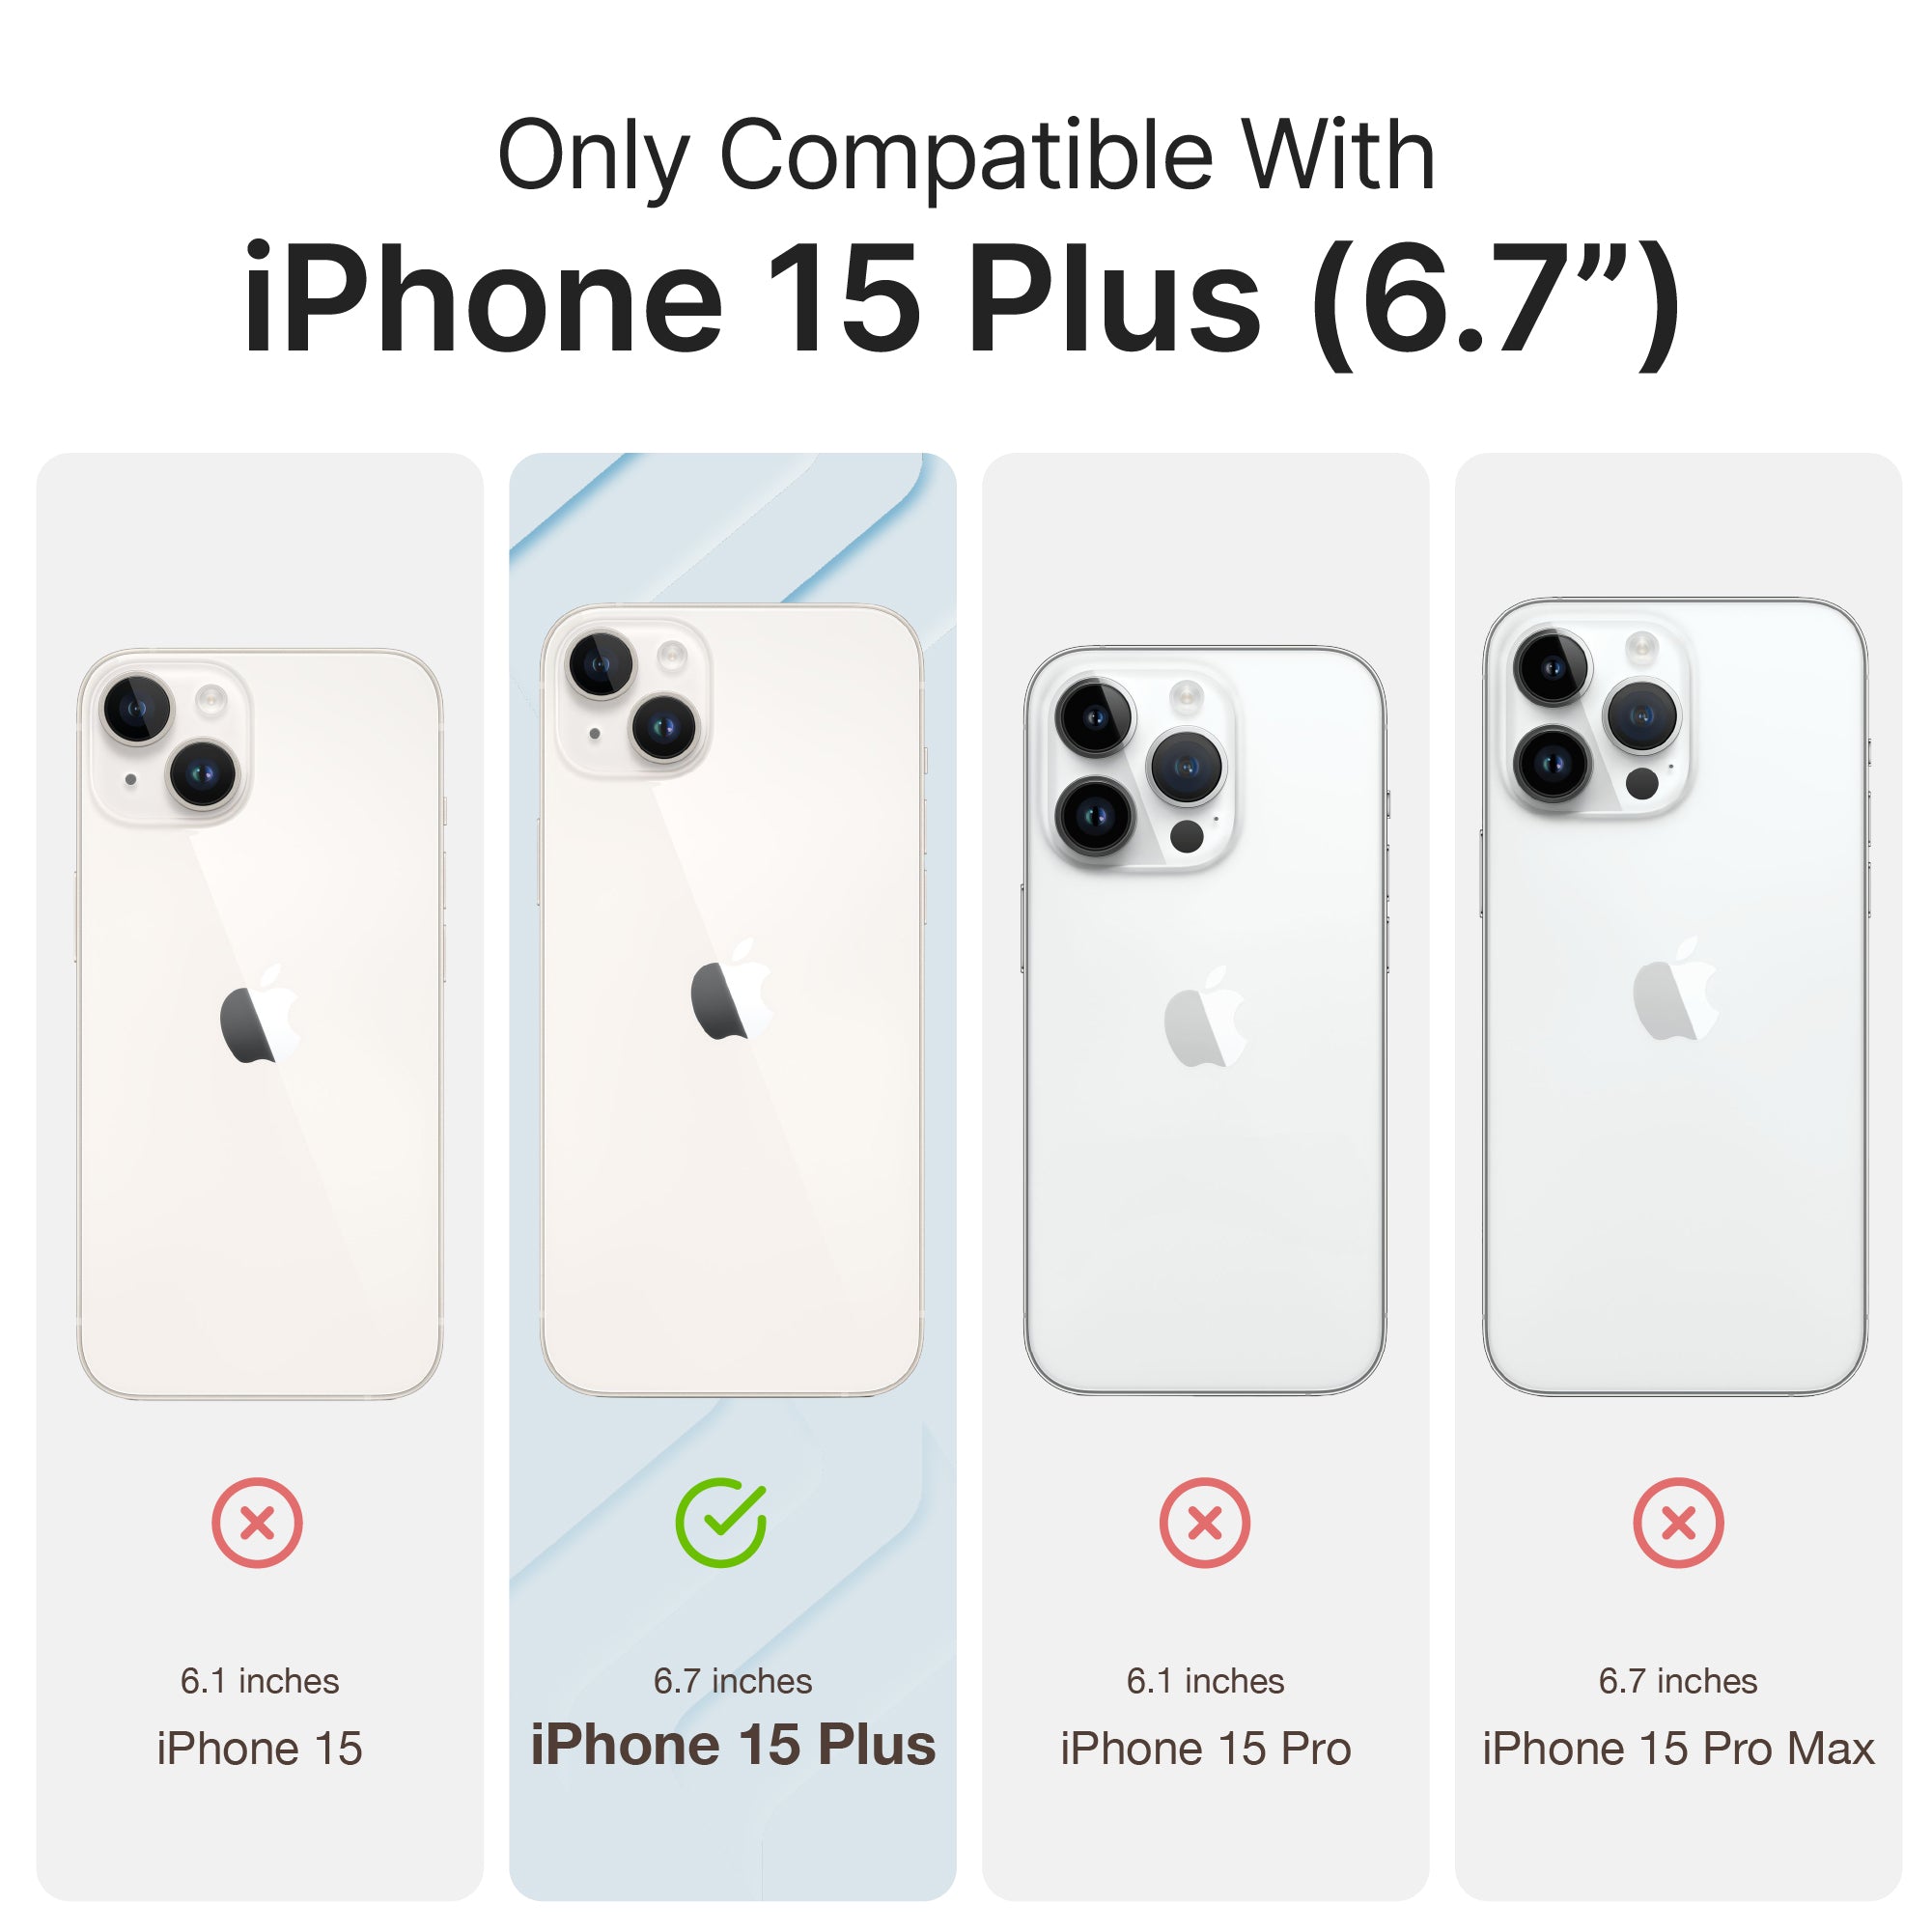 iPhone 15 Plus vs iPhone 12 Pro Max